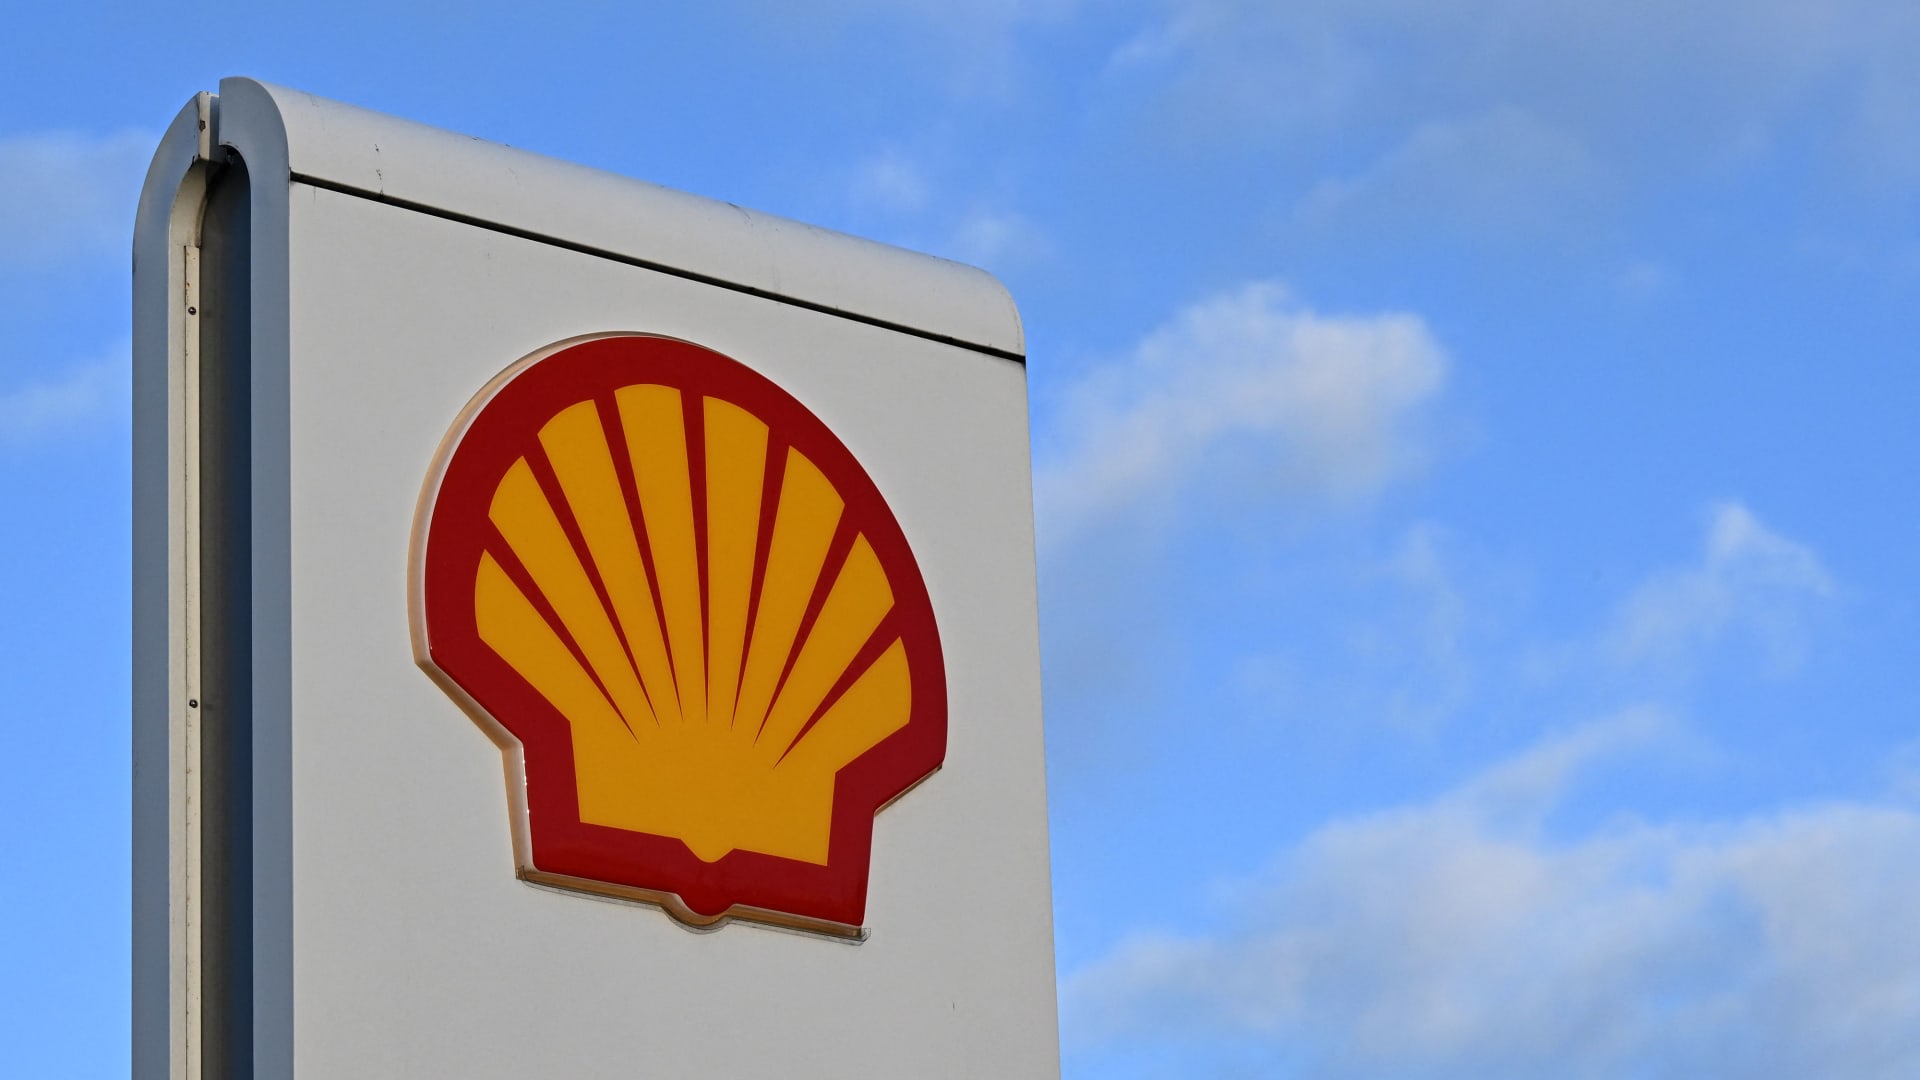 Shellдин өскөн кирешеси: мунайдын баасынын өзгөрүшүнө байланыштуу 6.2 миллиард доллар киреше